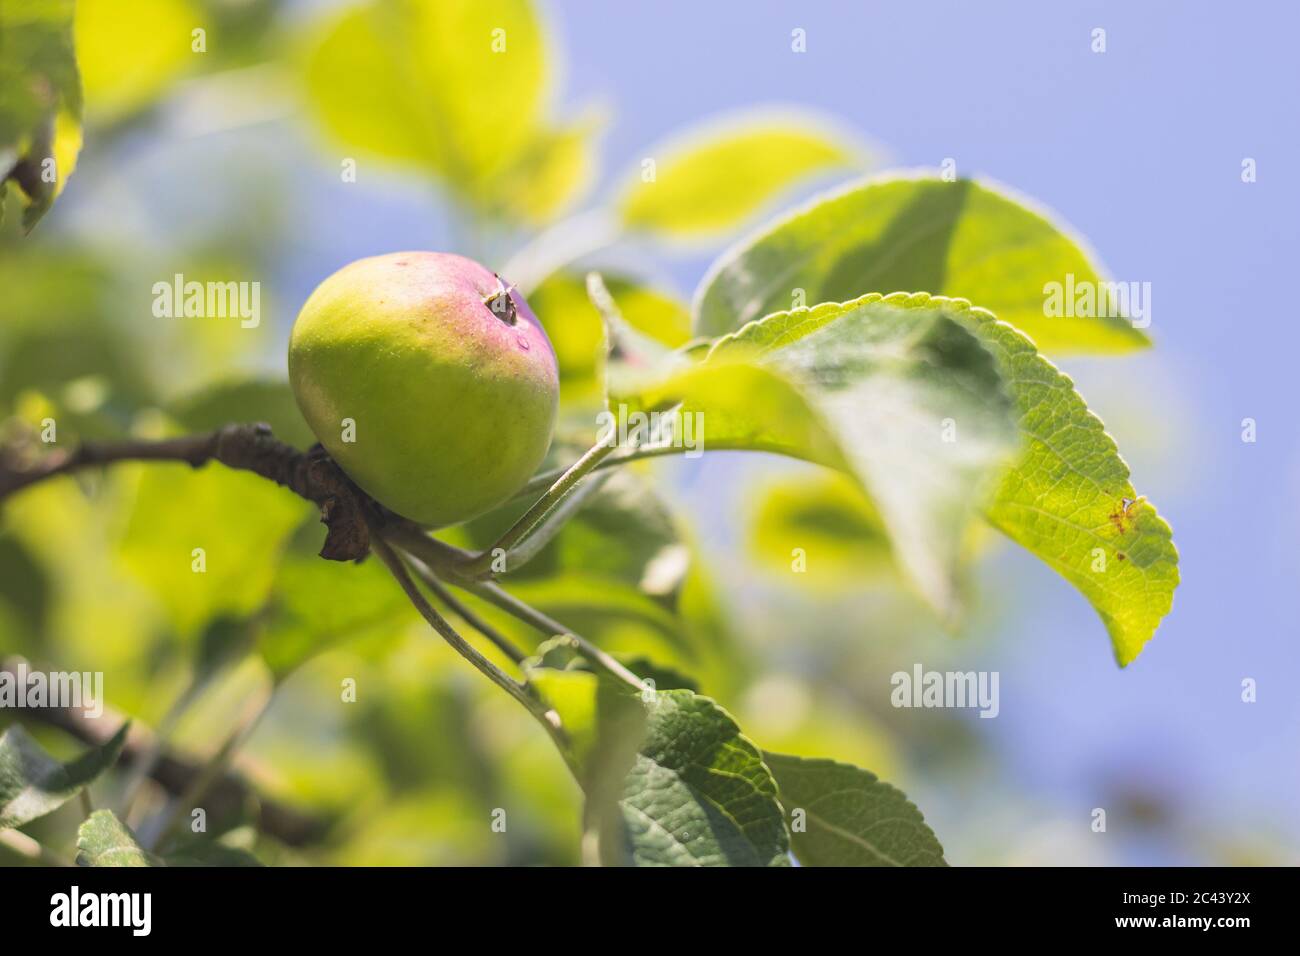 pomme verte sur un arbre - vue rapprochée d'une pomme non mûre sur une branche avec des feuilles Banque D'Images